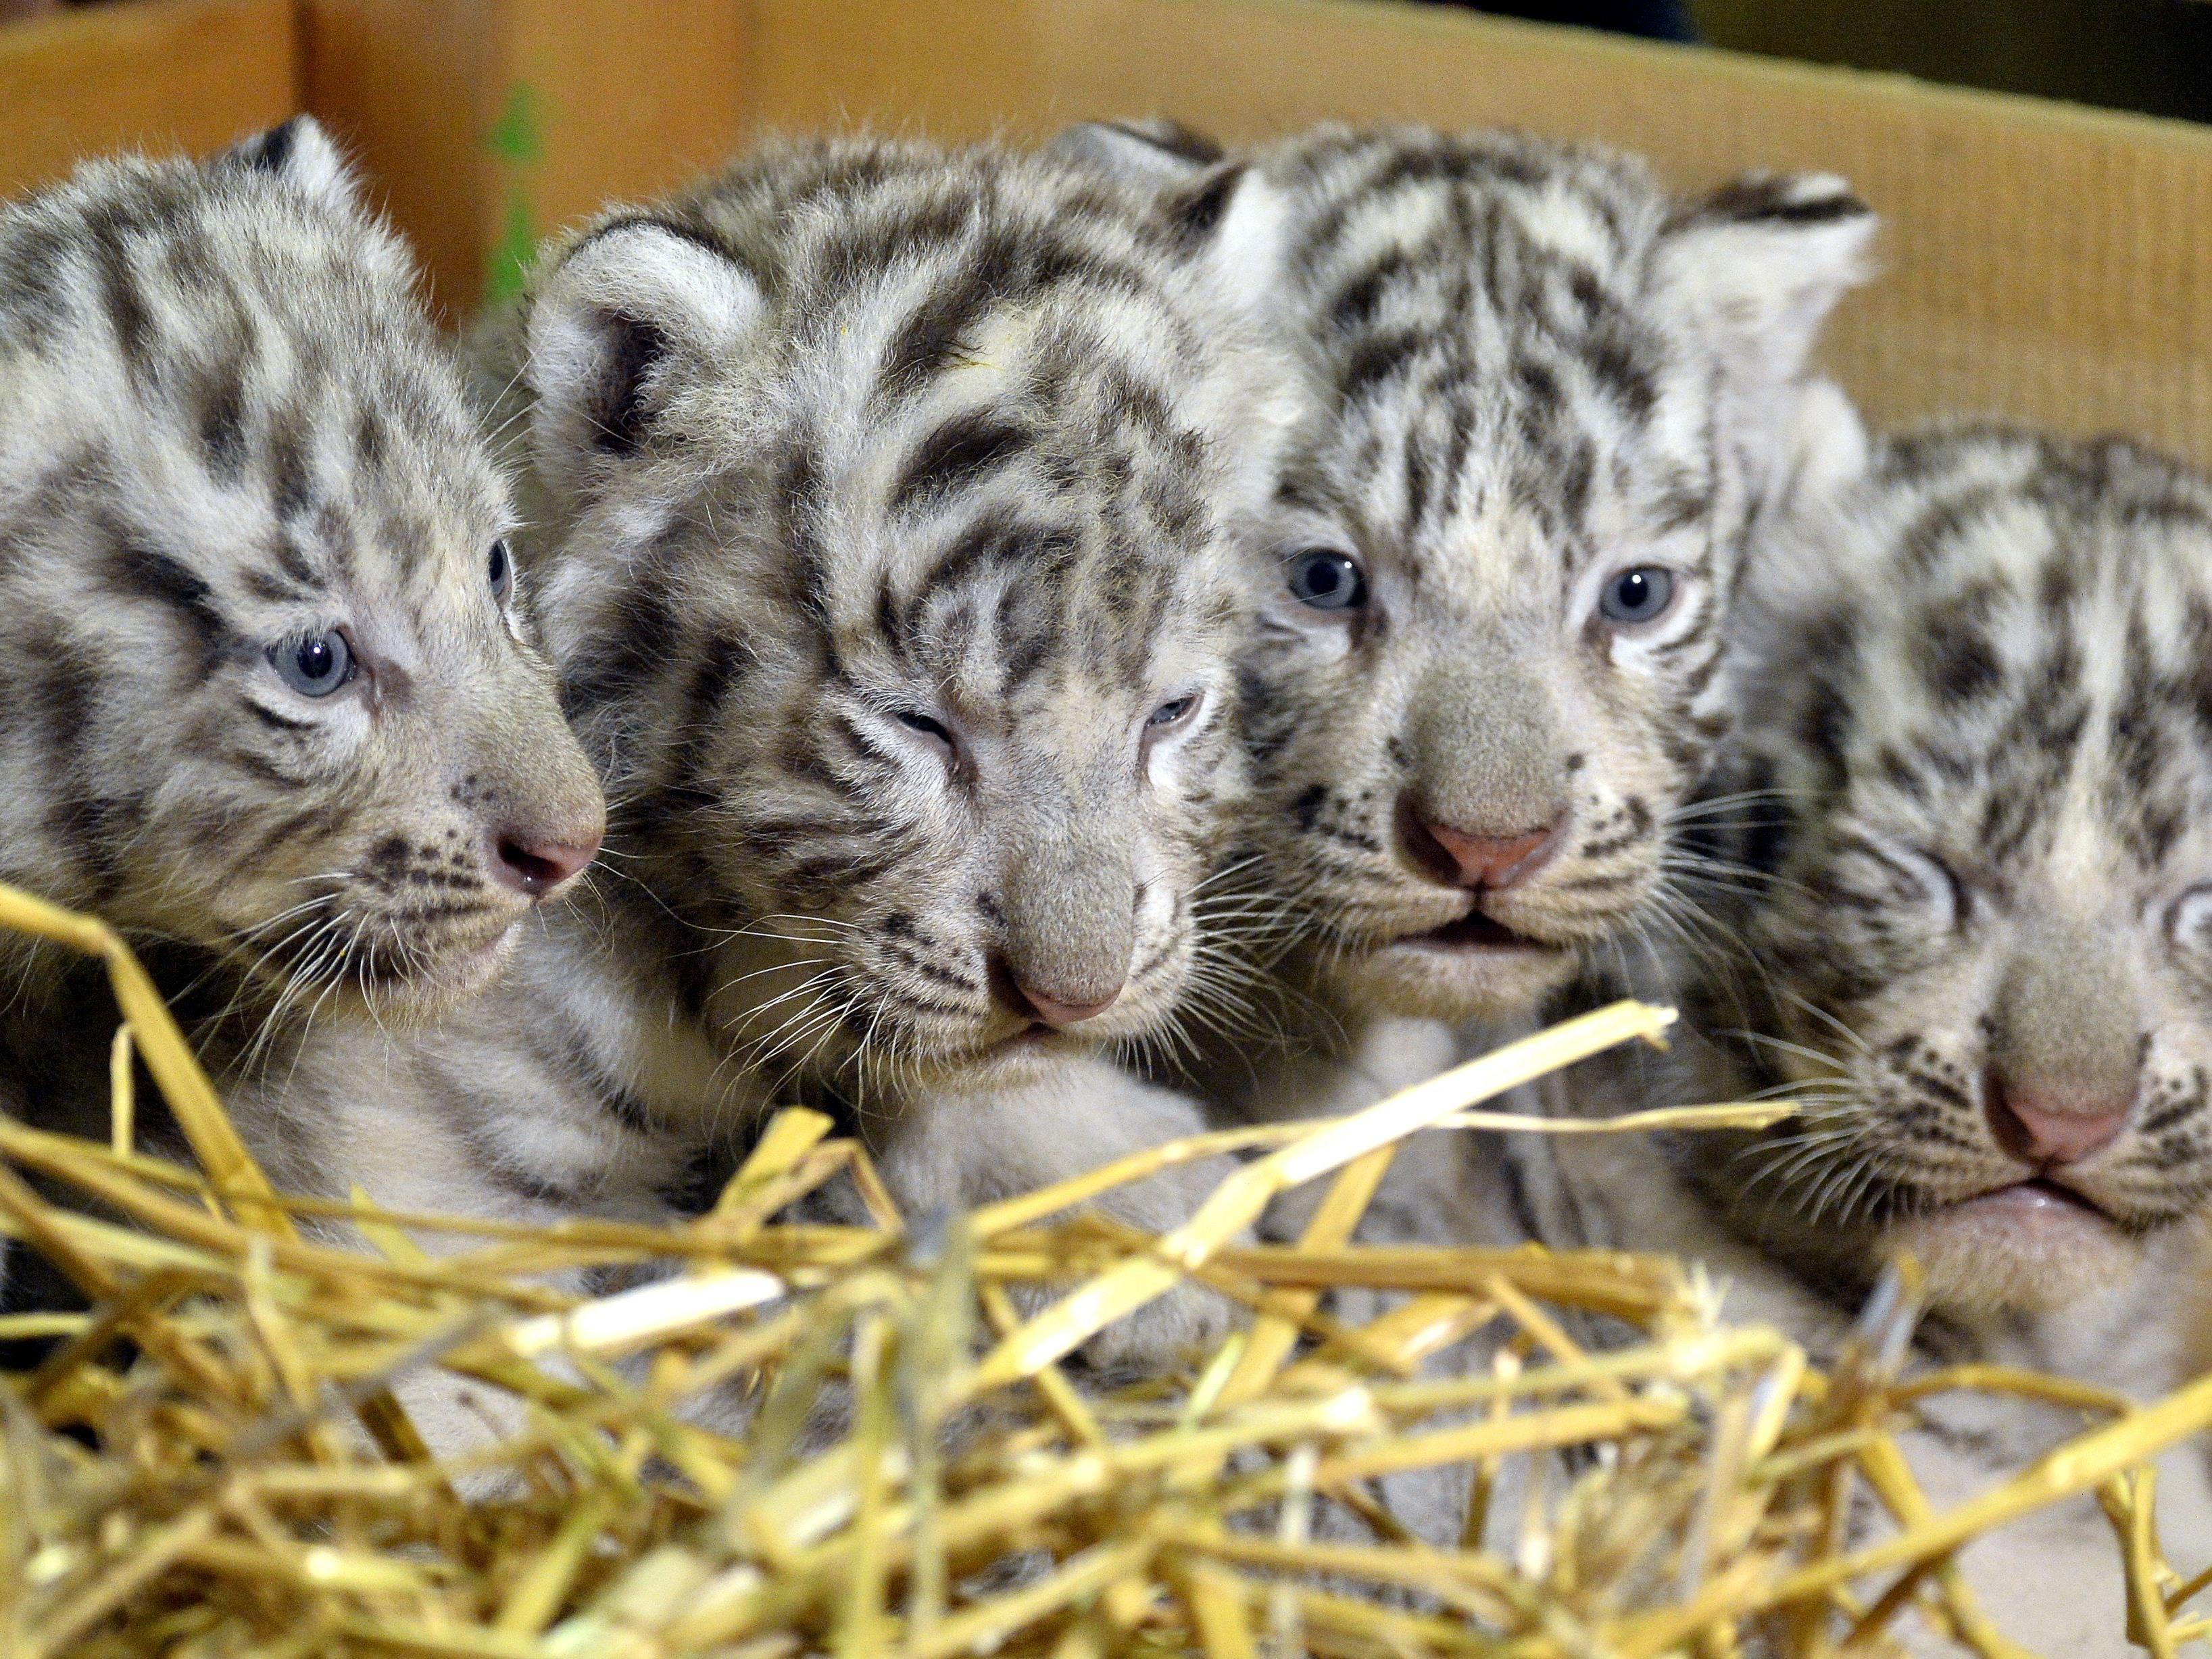 Weiße Tiger geboren: Das sind Falco, Toto, Mia und Mautzi